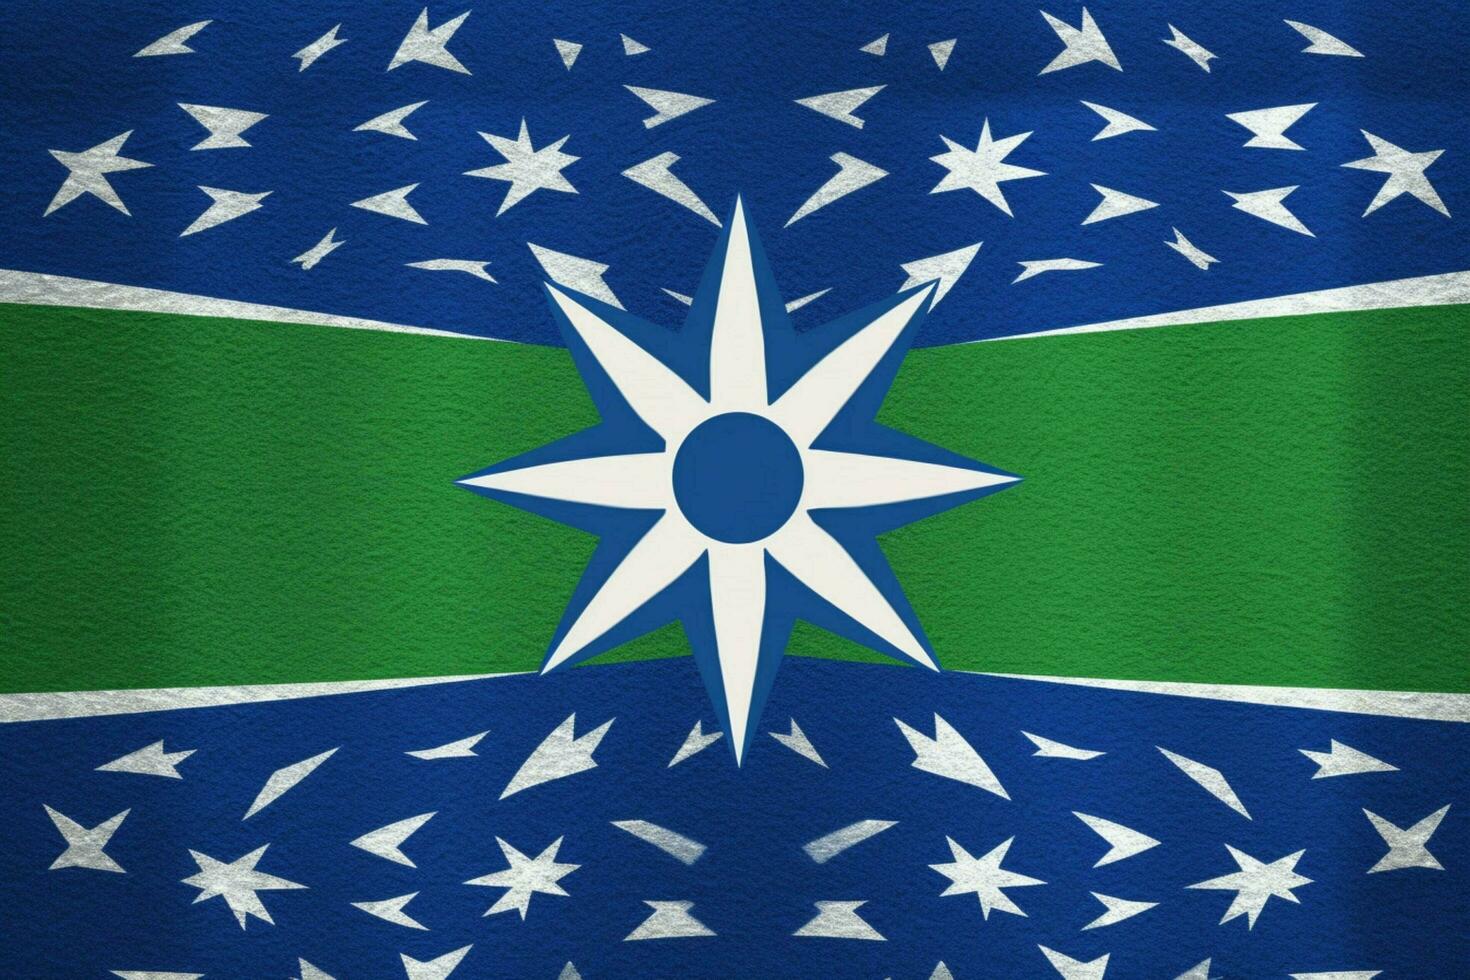 flag wallpaper of Lesotho photo